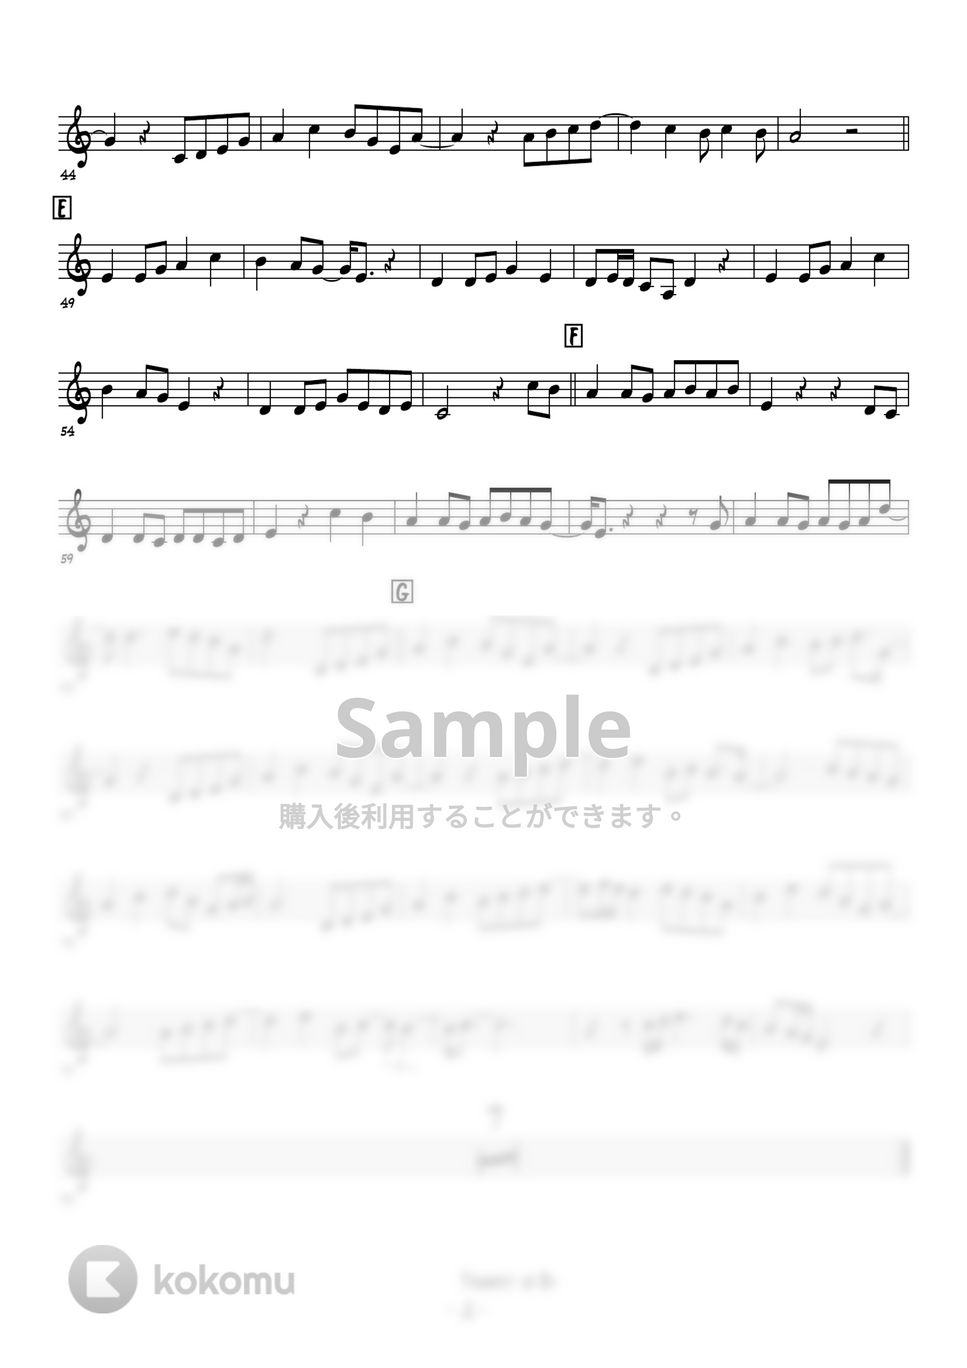 スターダストレビュー - 木蘭の涙 (トランペットメロディー楽譜) by 高田将利